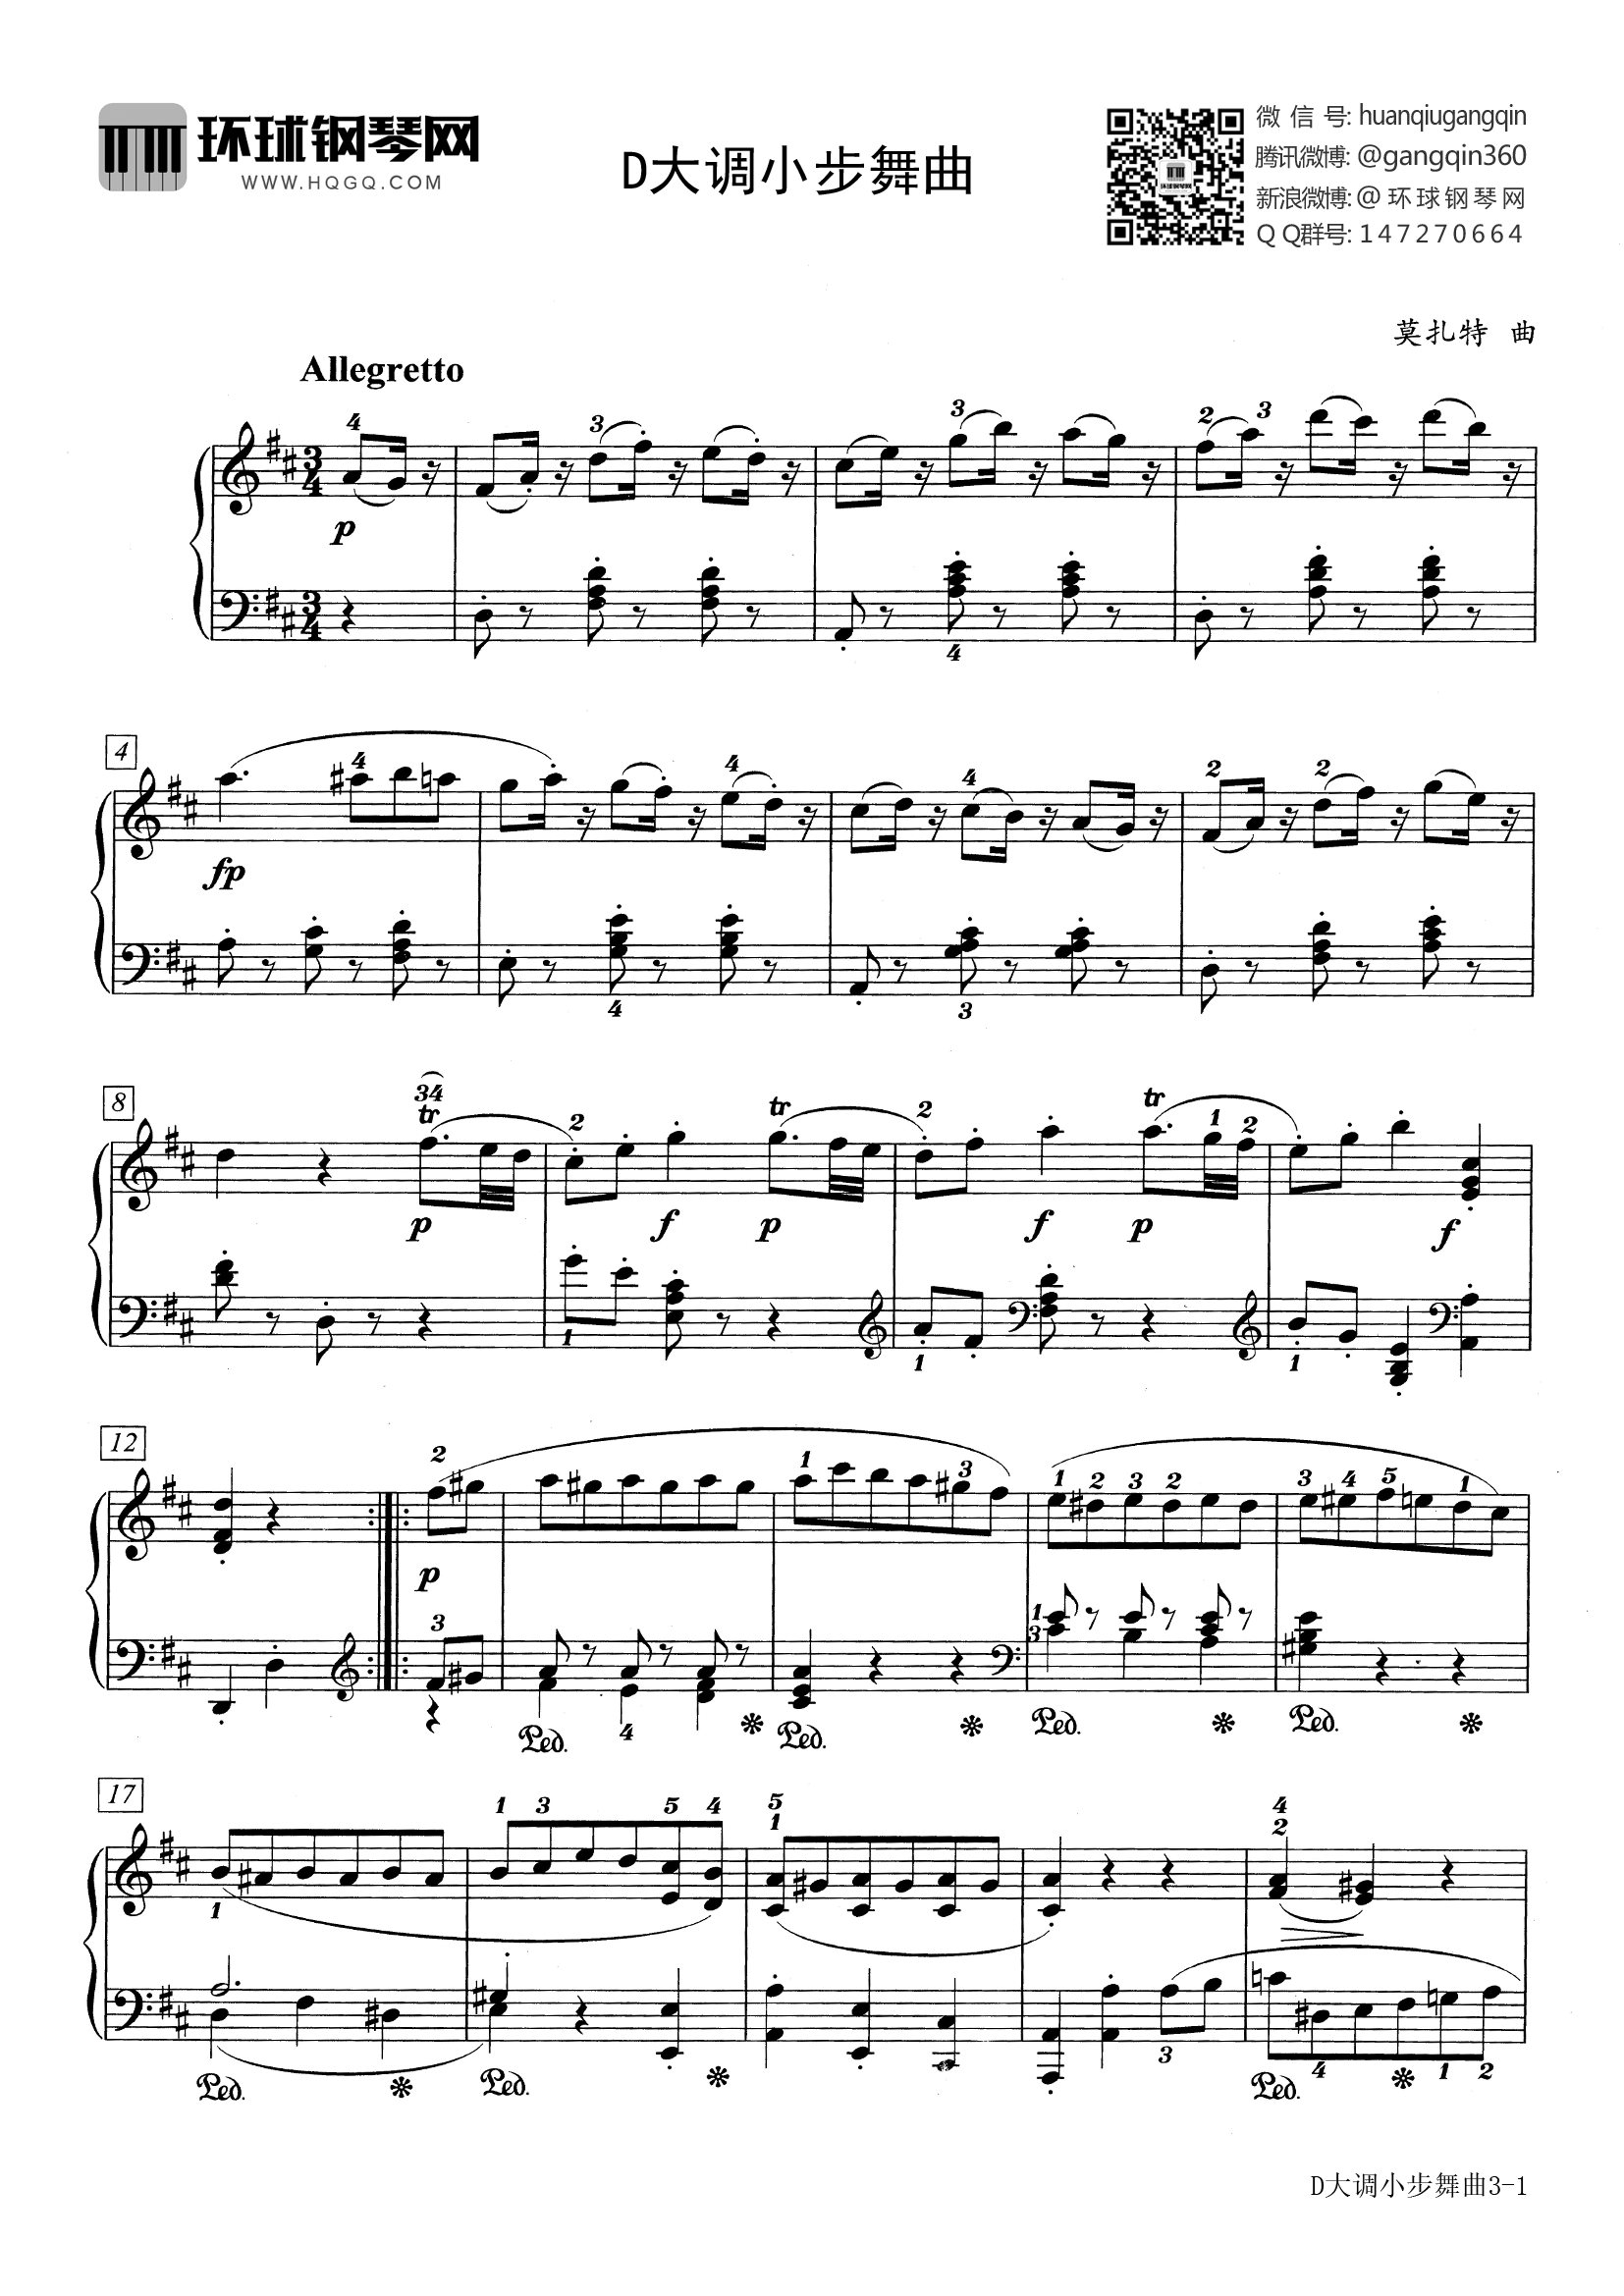 小步舞曲 8-巴赫-钢琴谱文件（五线谱、双手简谱、数字谱、Midi、PDF）免费下载